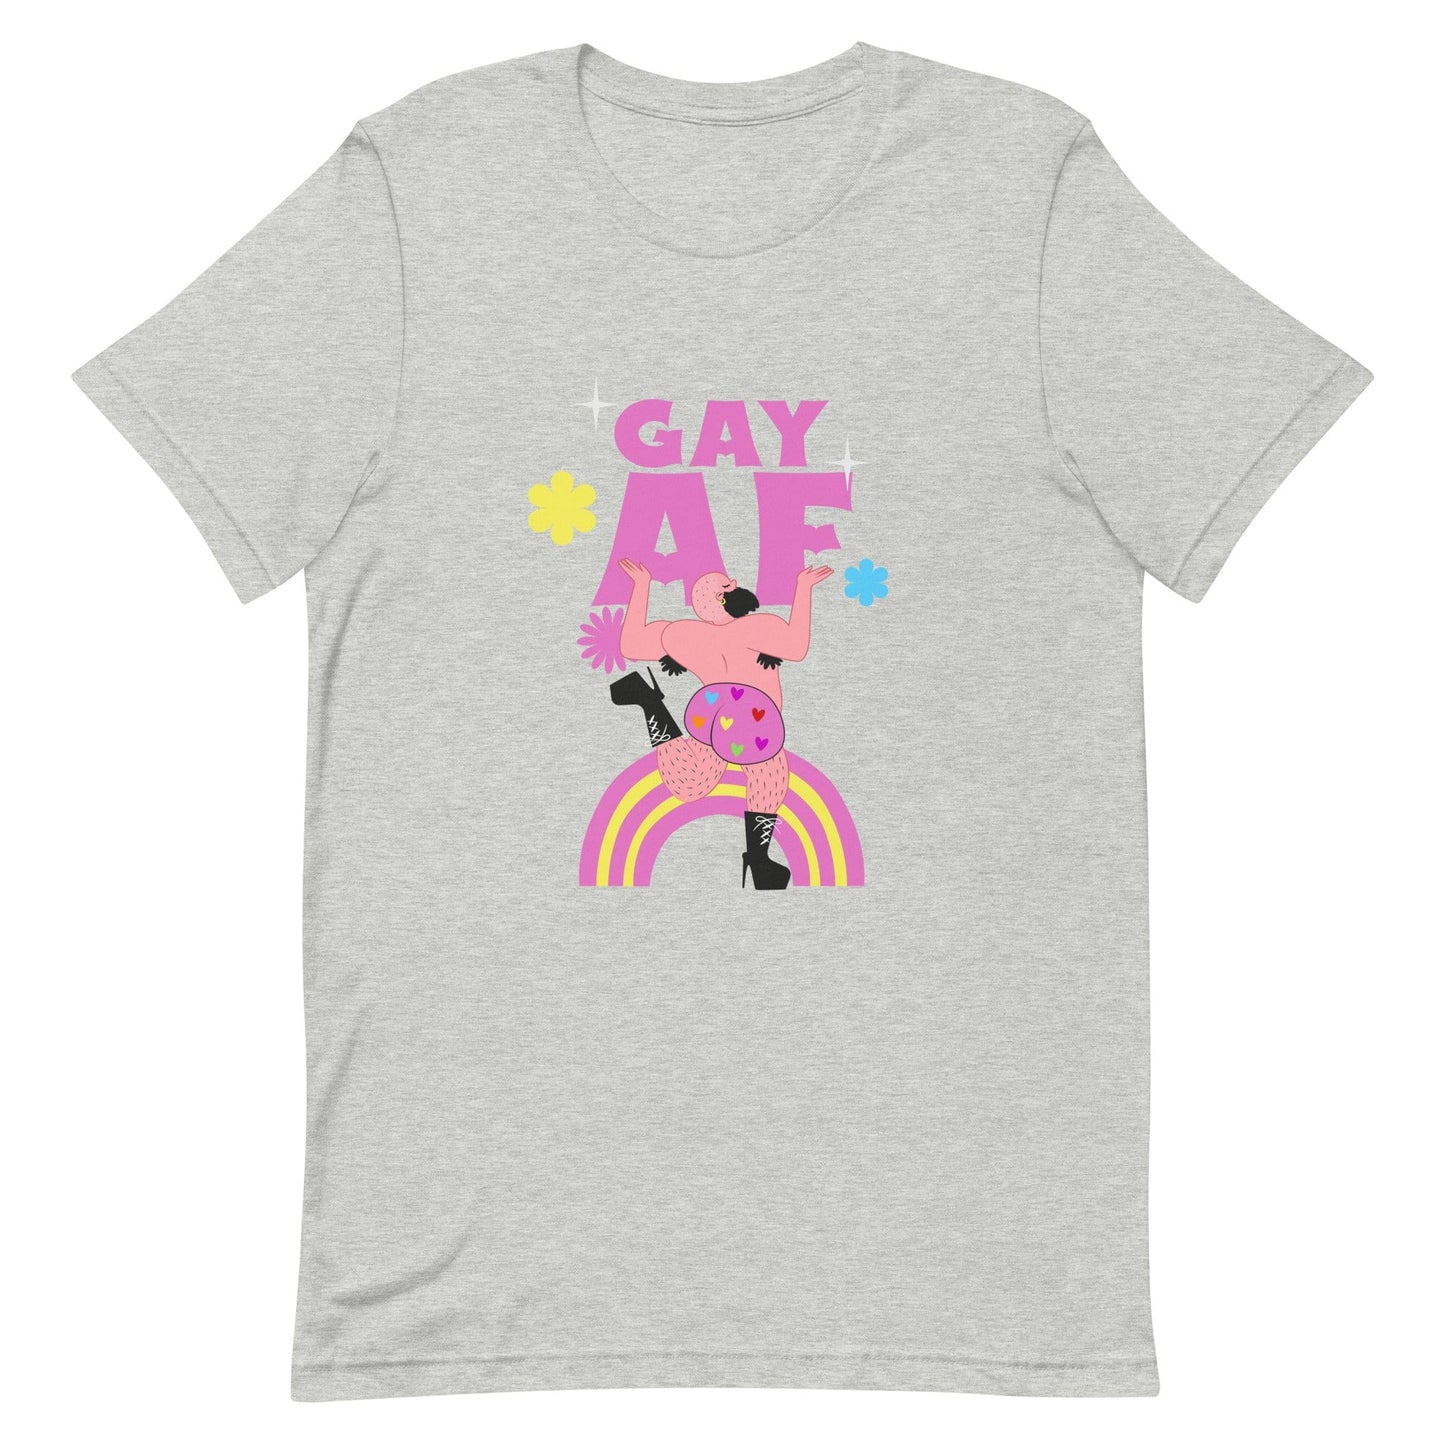 queer-gay-af-grey-t-shirt-lgbtq-by-feminist-define